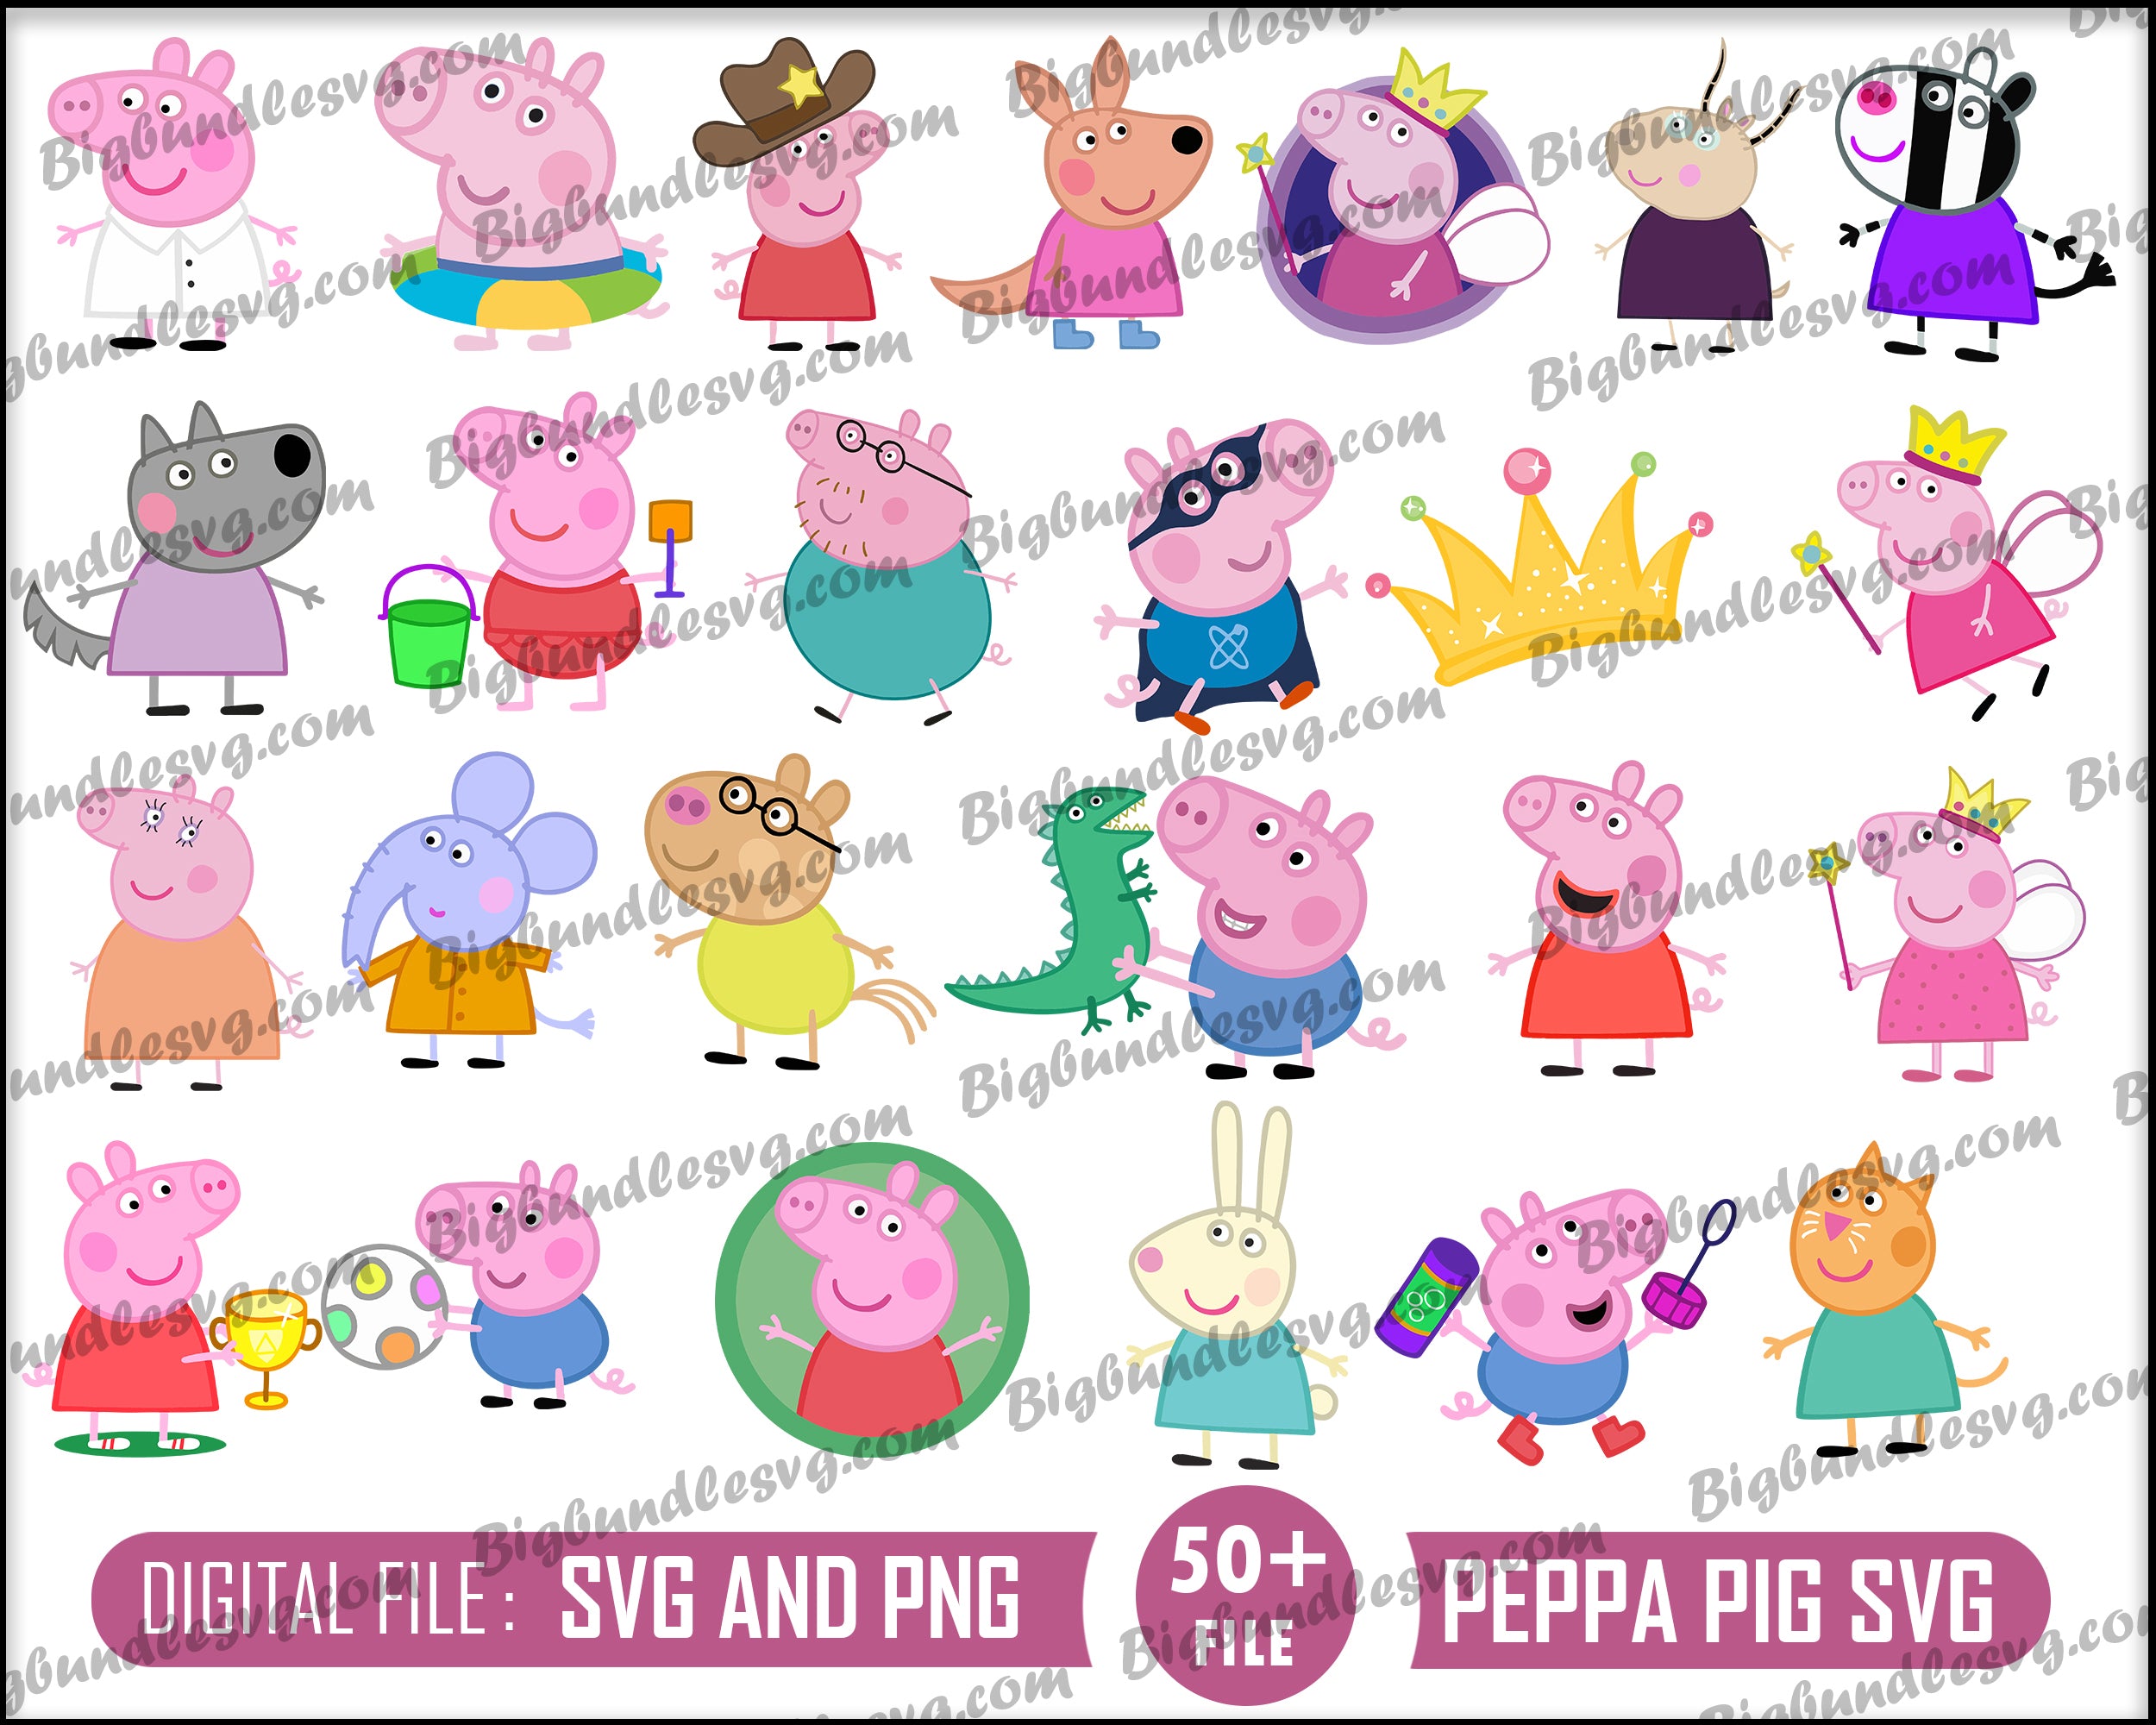 50+ Peppa Pig SVG PNG bundle - Digital download